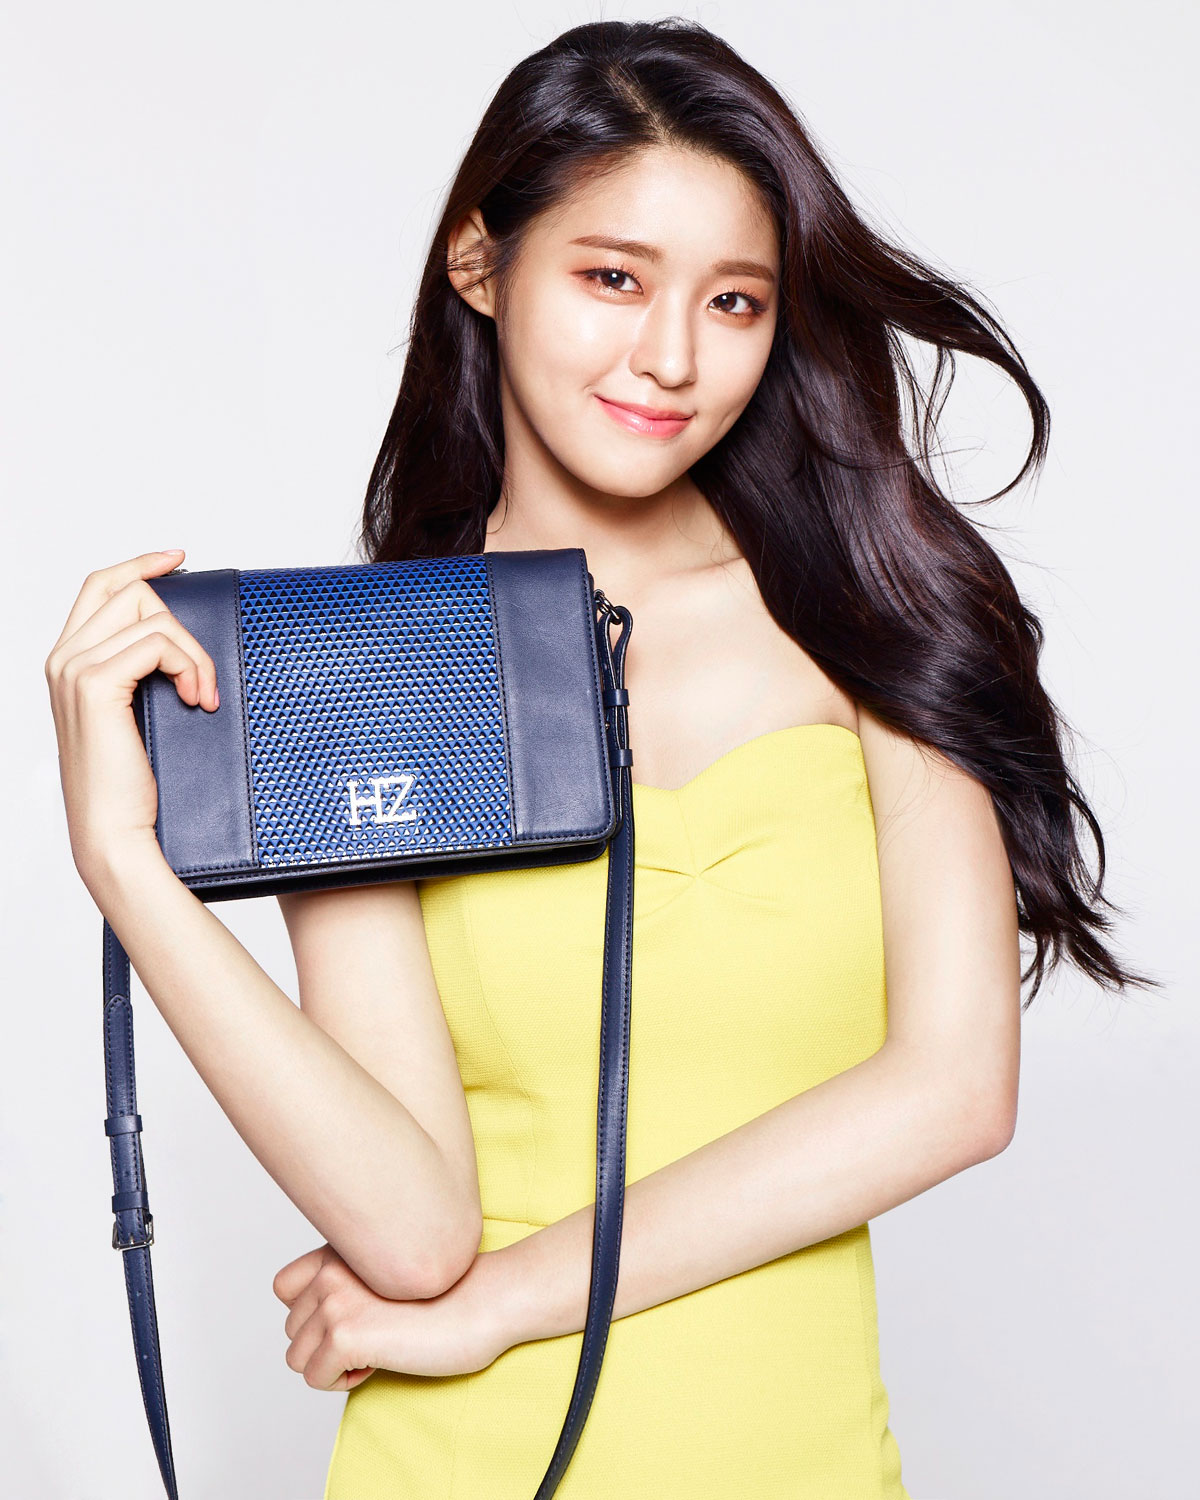 AOA Seolhyun Hazzys handbags advertisement